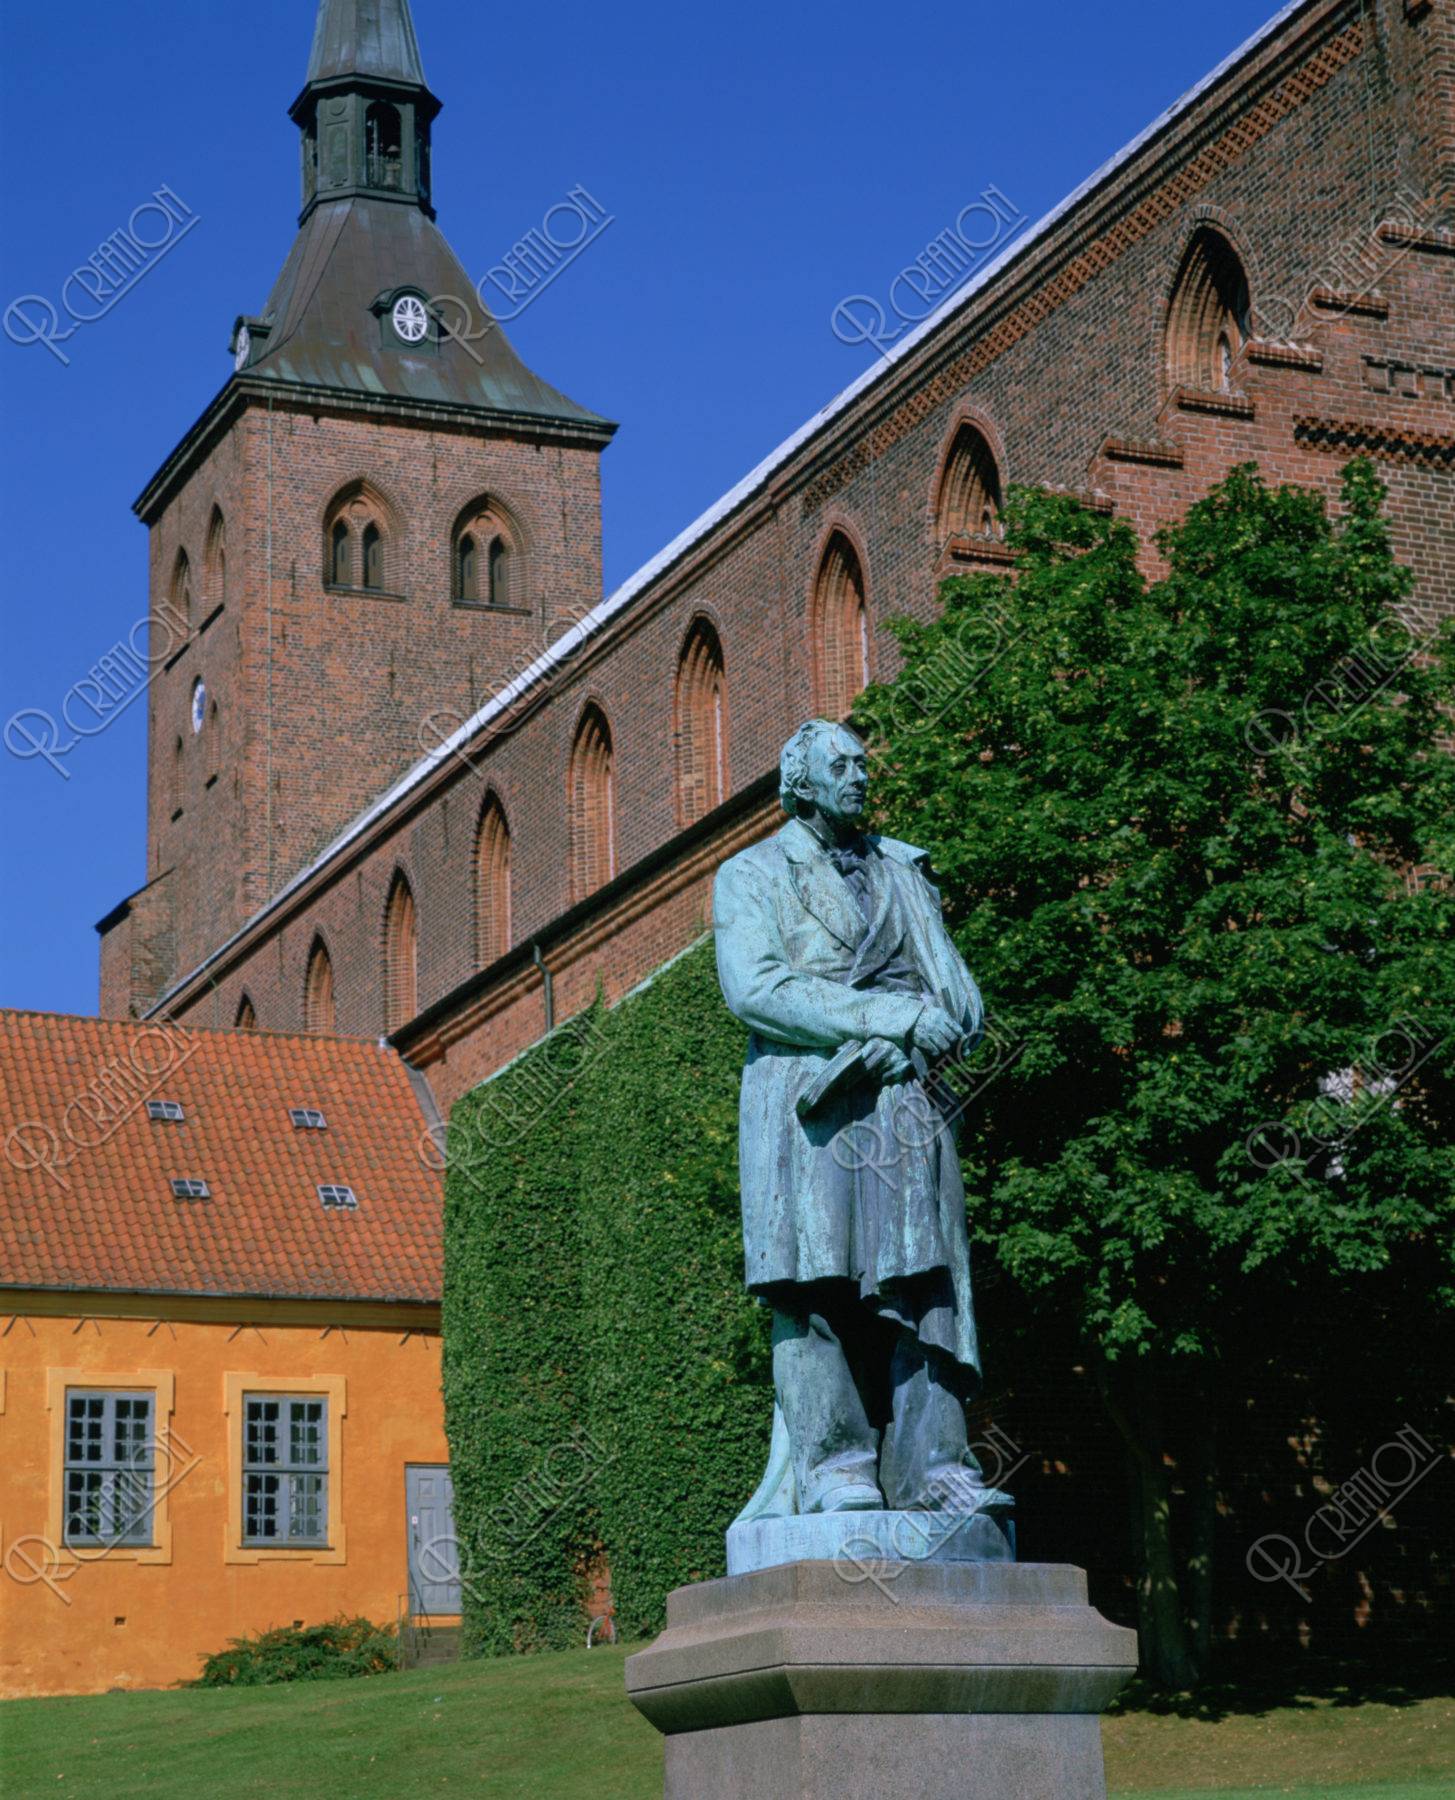 アンデルセンの像